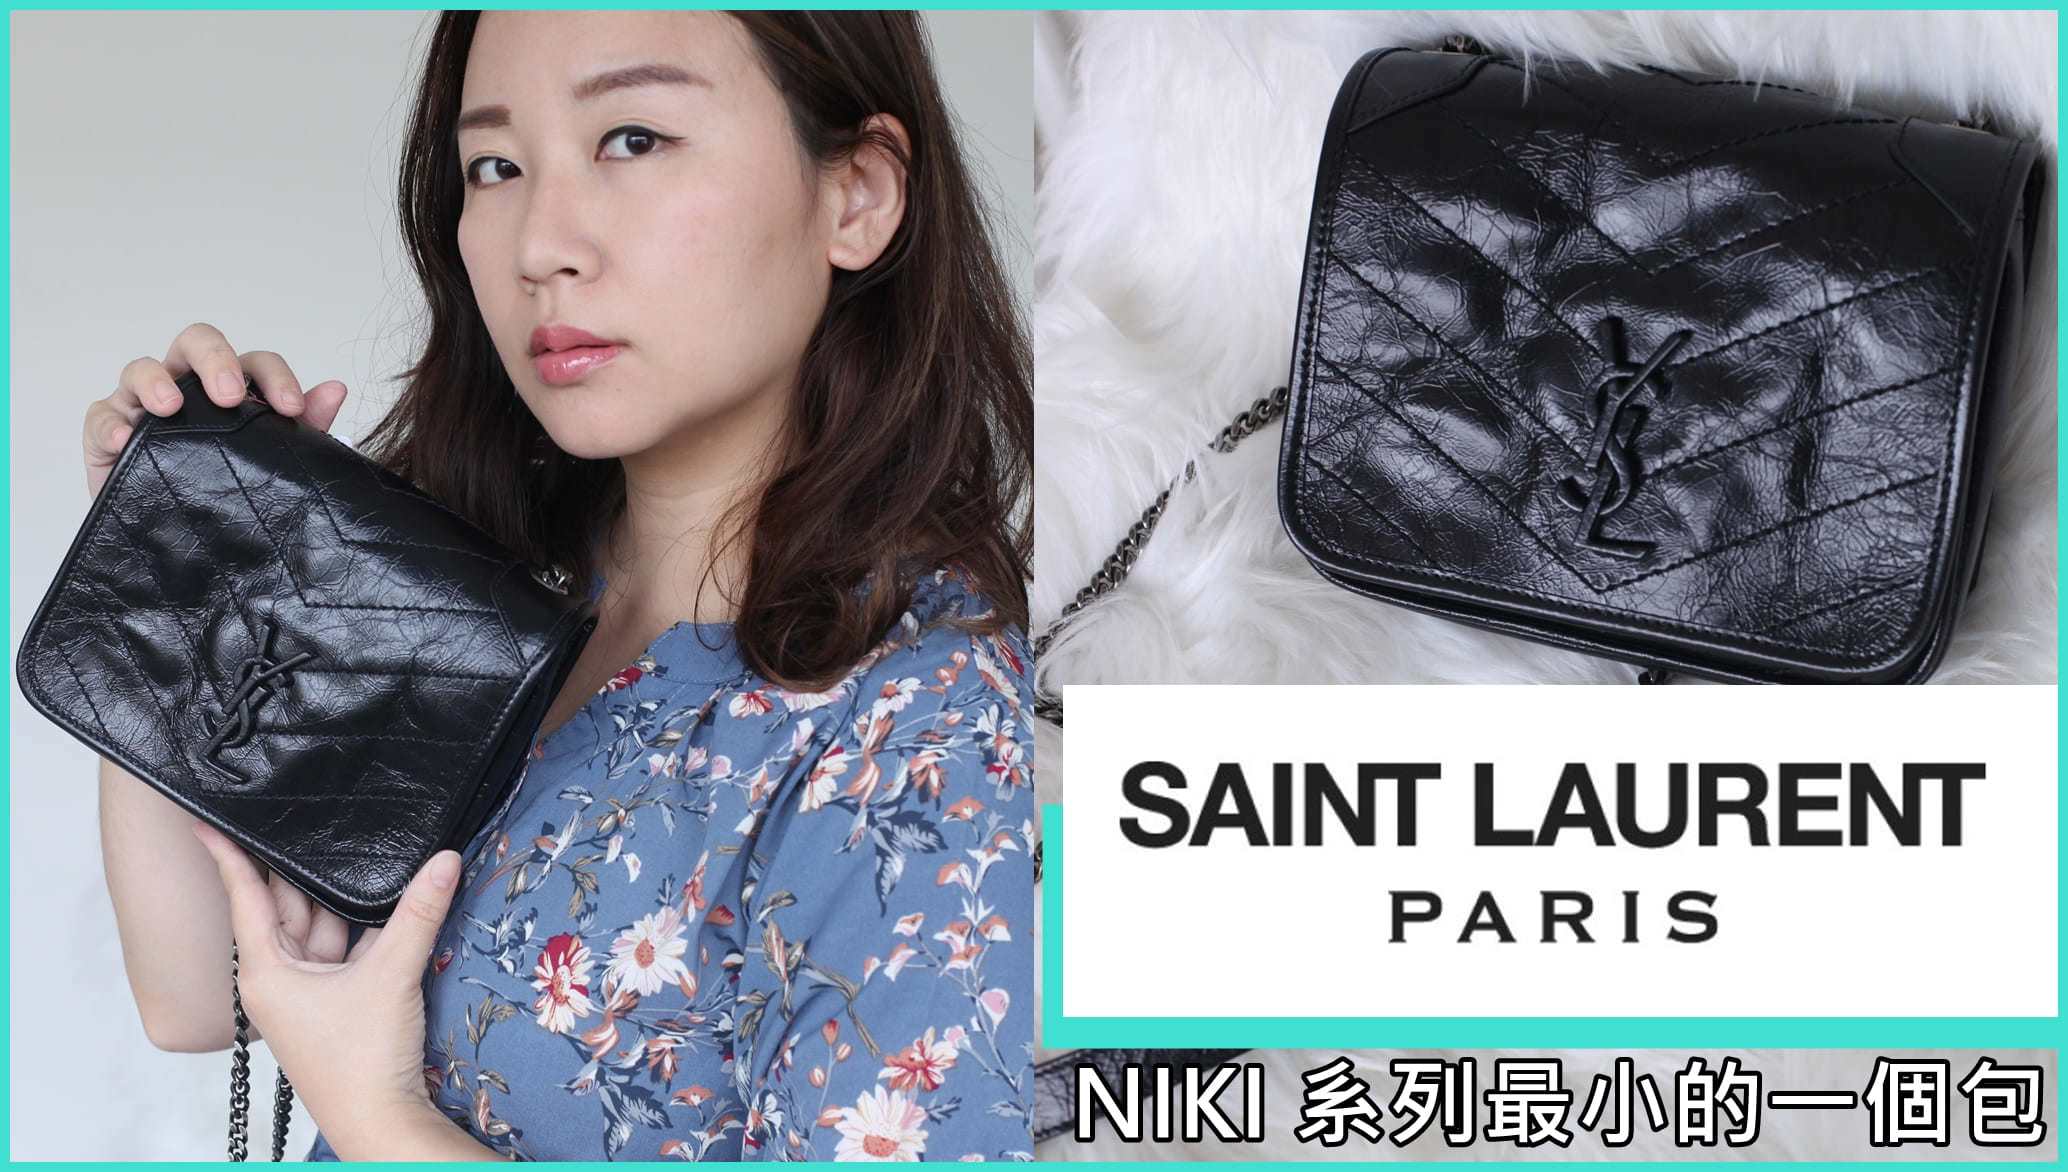 【影音開箱】YSL Saint Laurent niki mini bag 精品包開箱，新款小包跟niki系列長得不一樣呢 | 依娃精品開箱 @依娃旅行小確幸